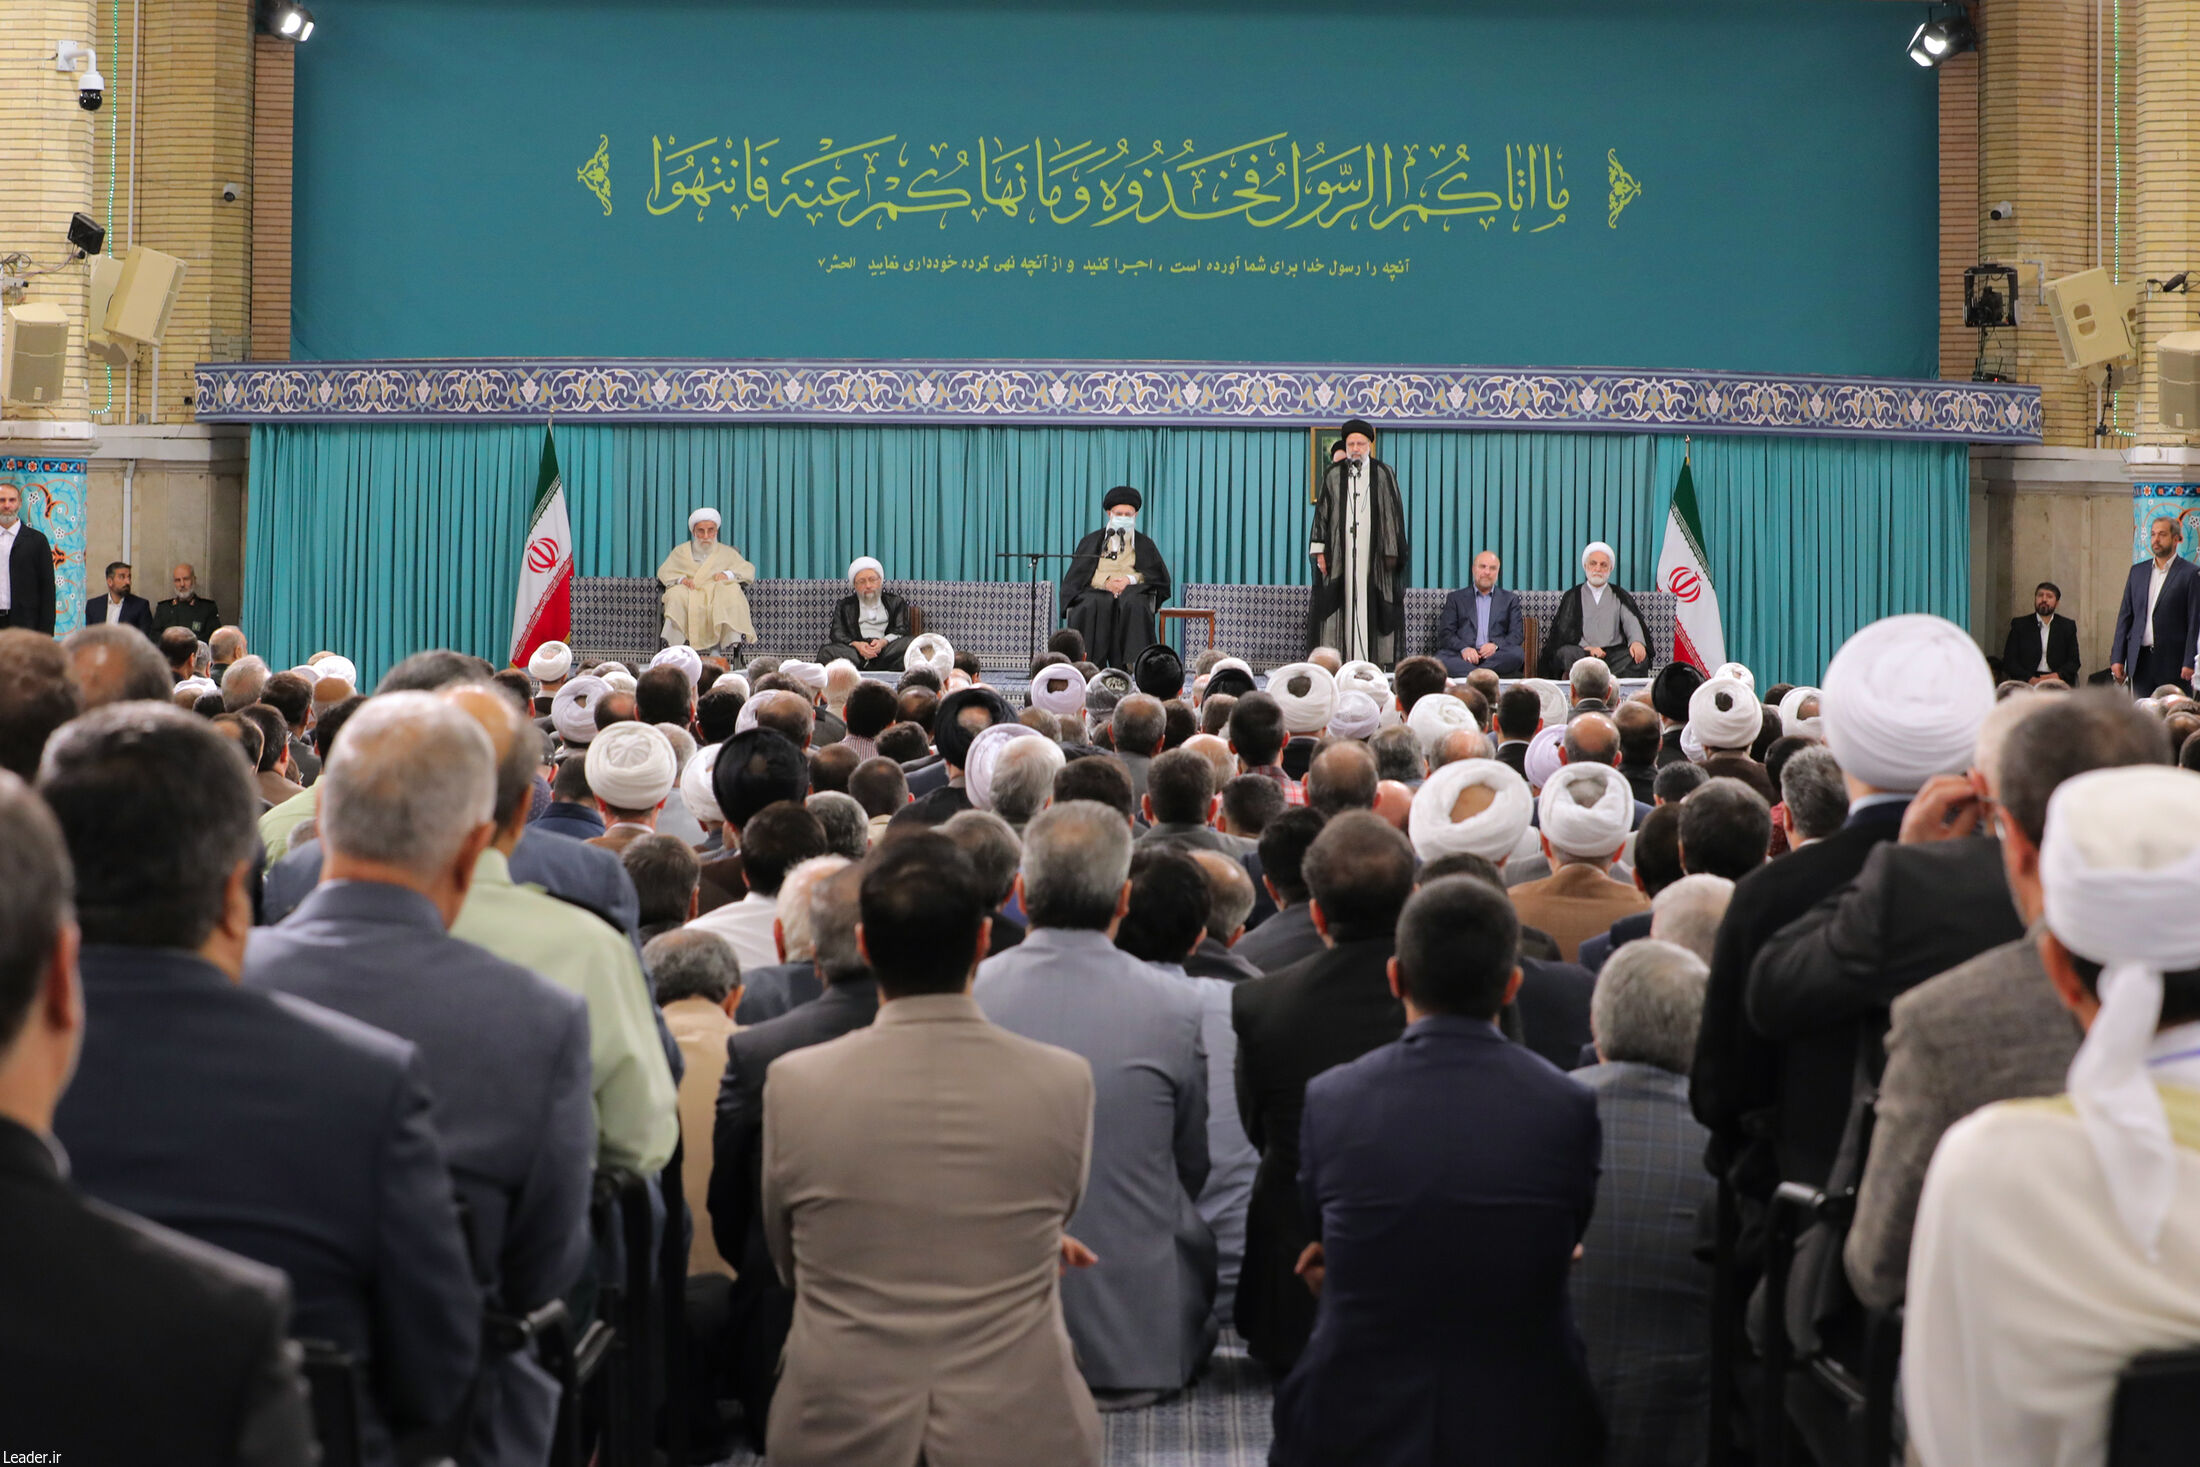 رہبر معظم انقلاب اسلامی سے حکومت کے حکام، اسلامی ممالک کے سفیروں اور وحدت کانفرنس کے مہمانوں کی ملاقات  